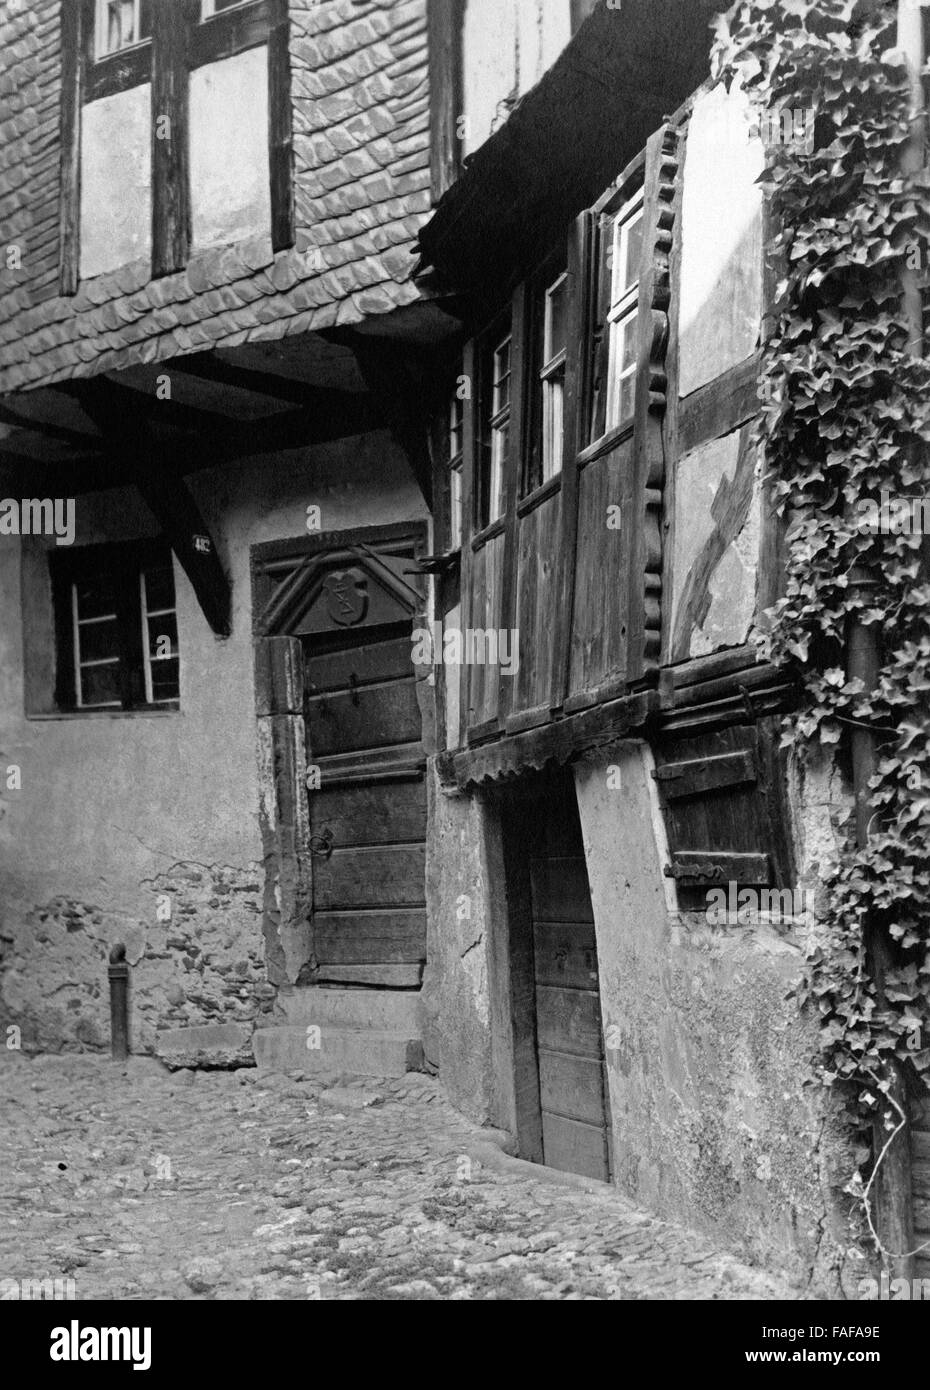 Das Haus Nr. 482 dans der Ortschaft Saarburg an der Mosel, Deutschland 1930 er Jahre. Chambre no. 482 à la petite ville de Potsdam à Moselle, Allemagne 1930. Banque D'Images